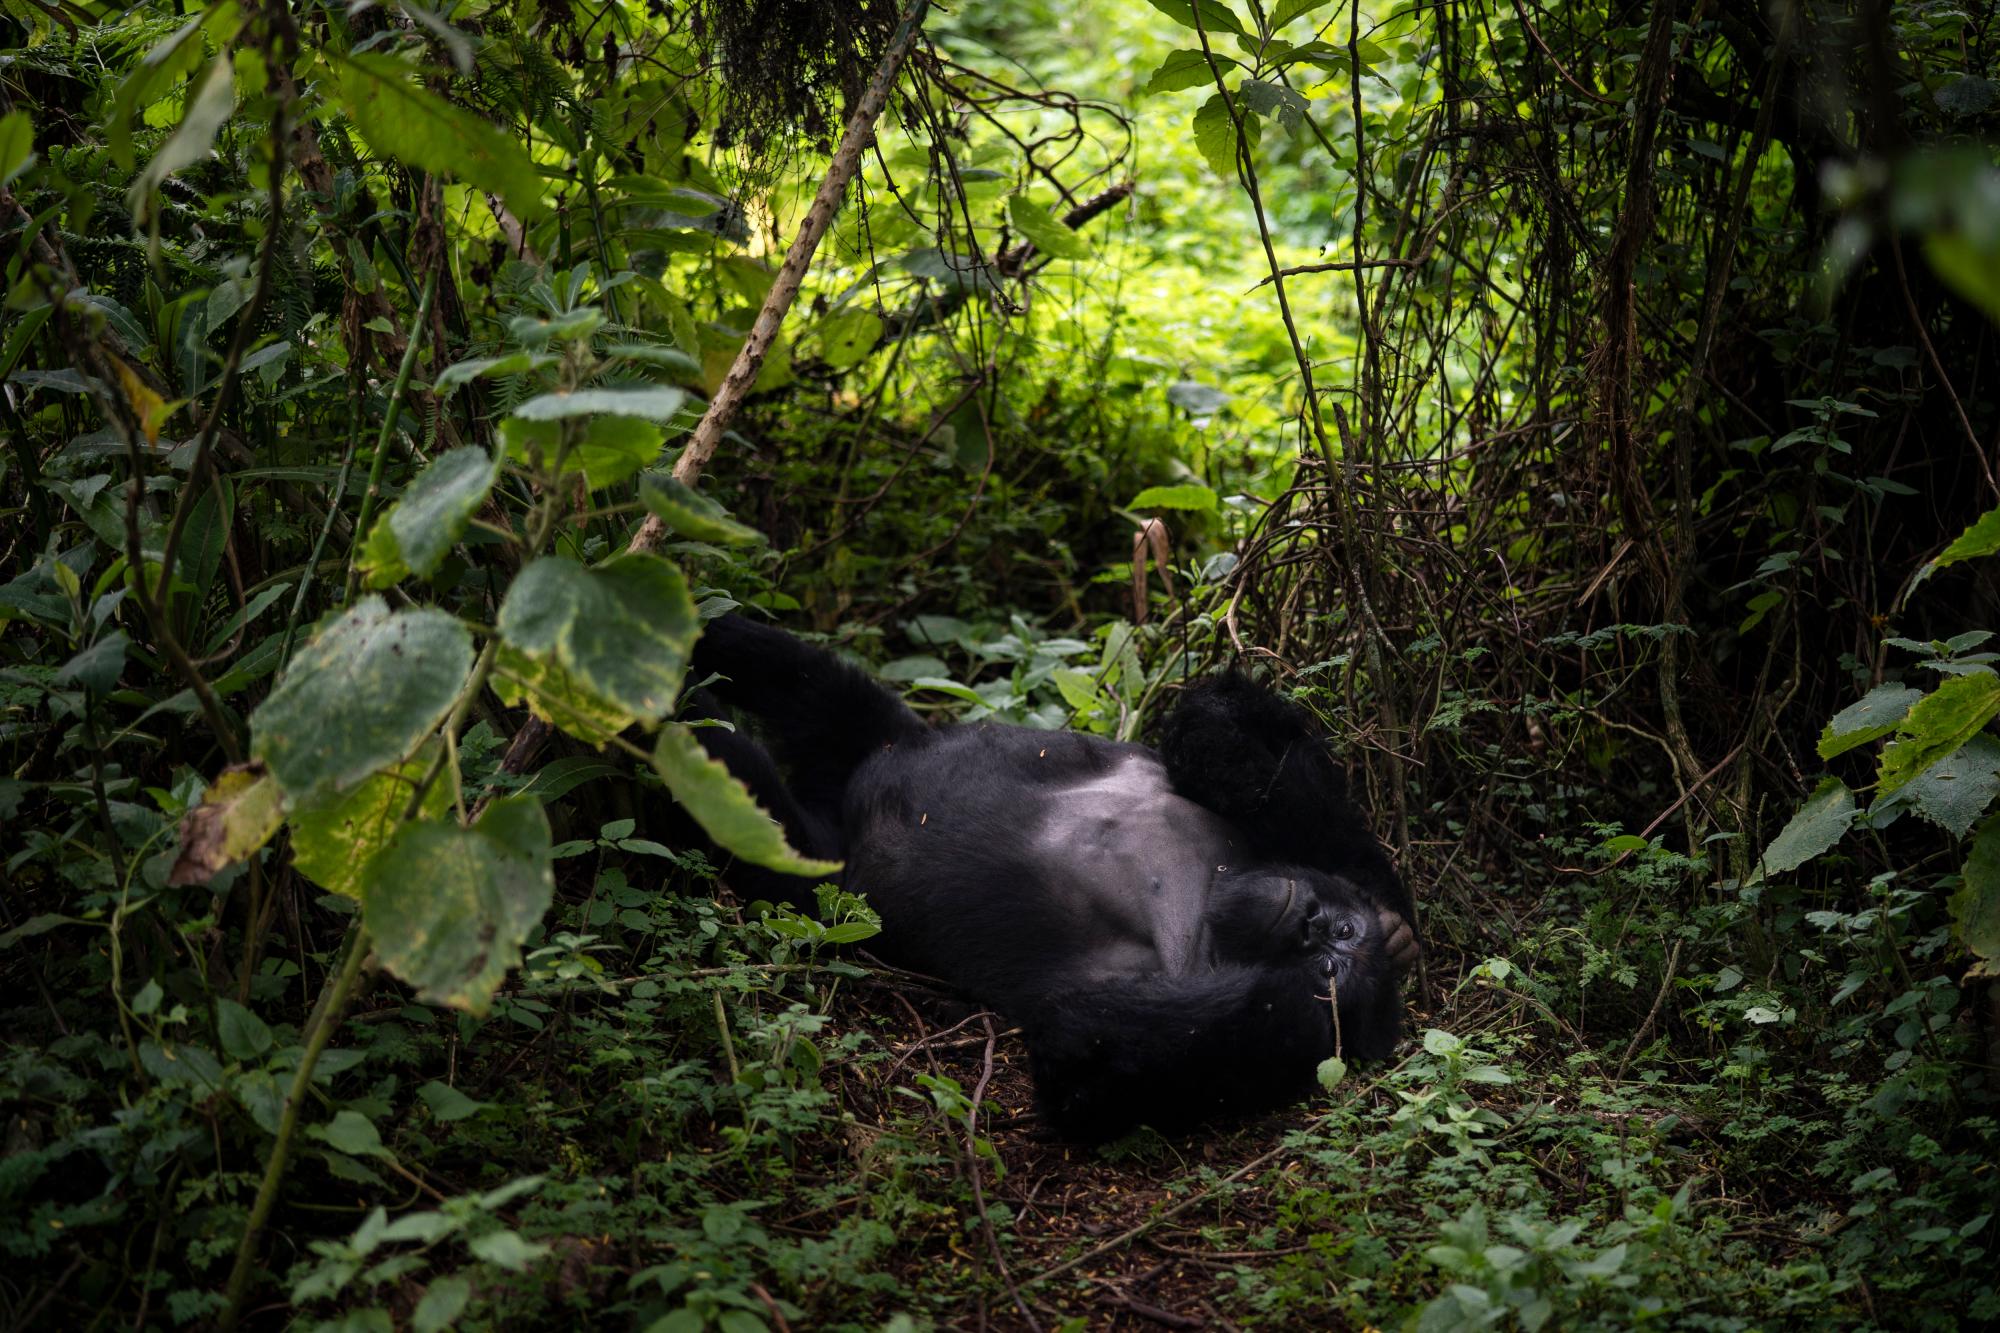 En esta foto del 2 de septiembre de 2019, un gorila de montaña de espalda plateada llamado Segasira yace debajo de un árbol en el Parque Nacional de los Volcanes, Ruanda. Una vez representados en leyendas y películas como “King Kong” como bestias temibles, los gorilas son en realidad primates lánguidos que solo comen plantas e insectos, y viven en grupos familiares bastante estables y extendidos. Su fuerza y exhibiciones de golpes en el pecho generalmente están reservadas para concursos entre rivales masculinos.